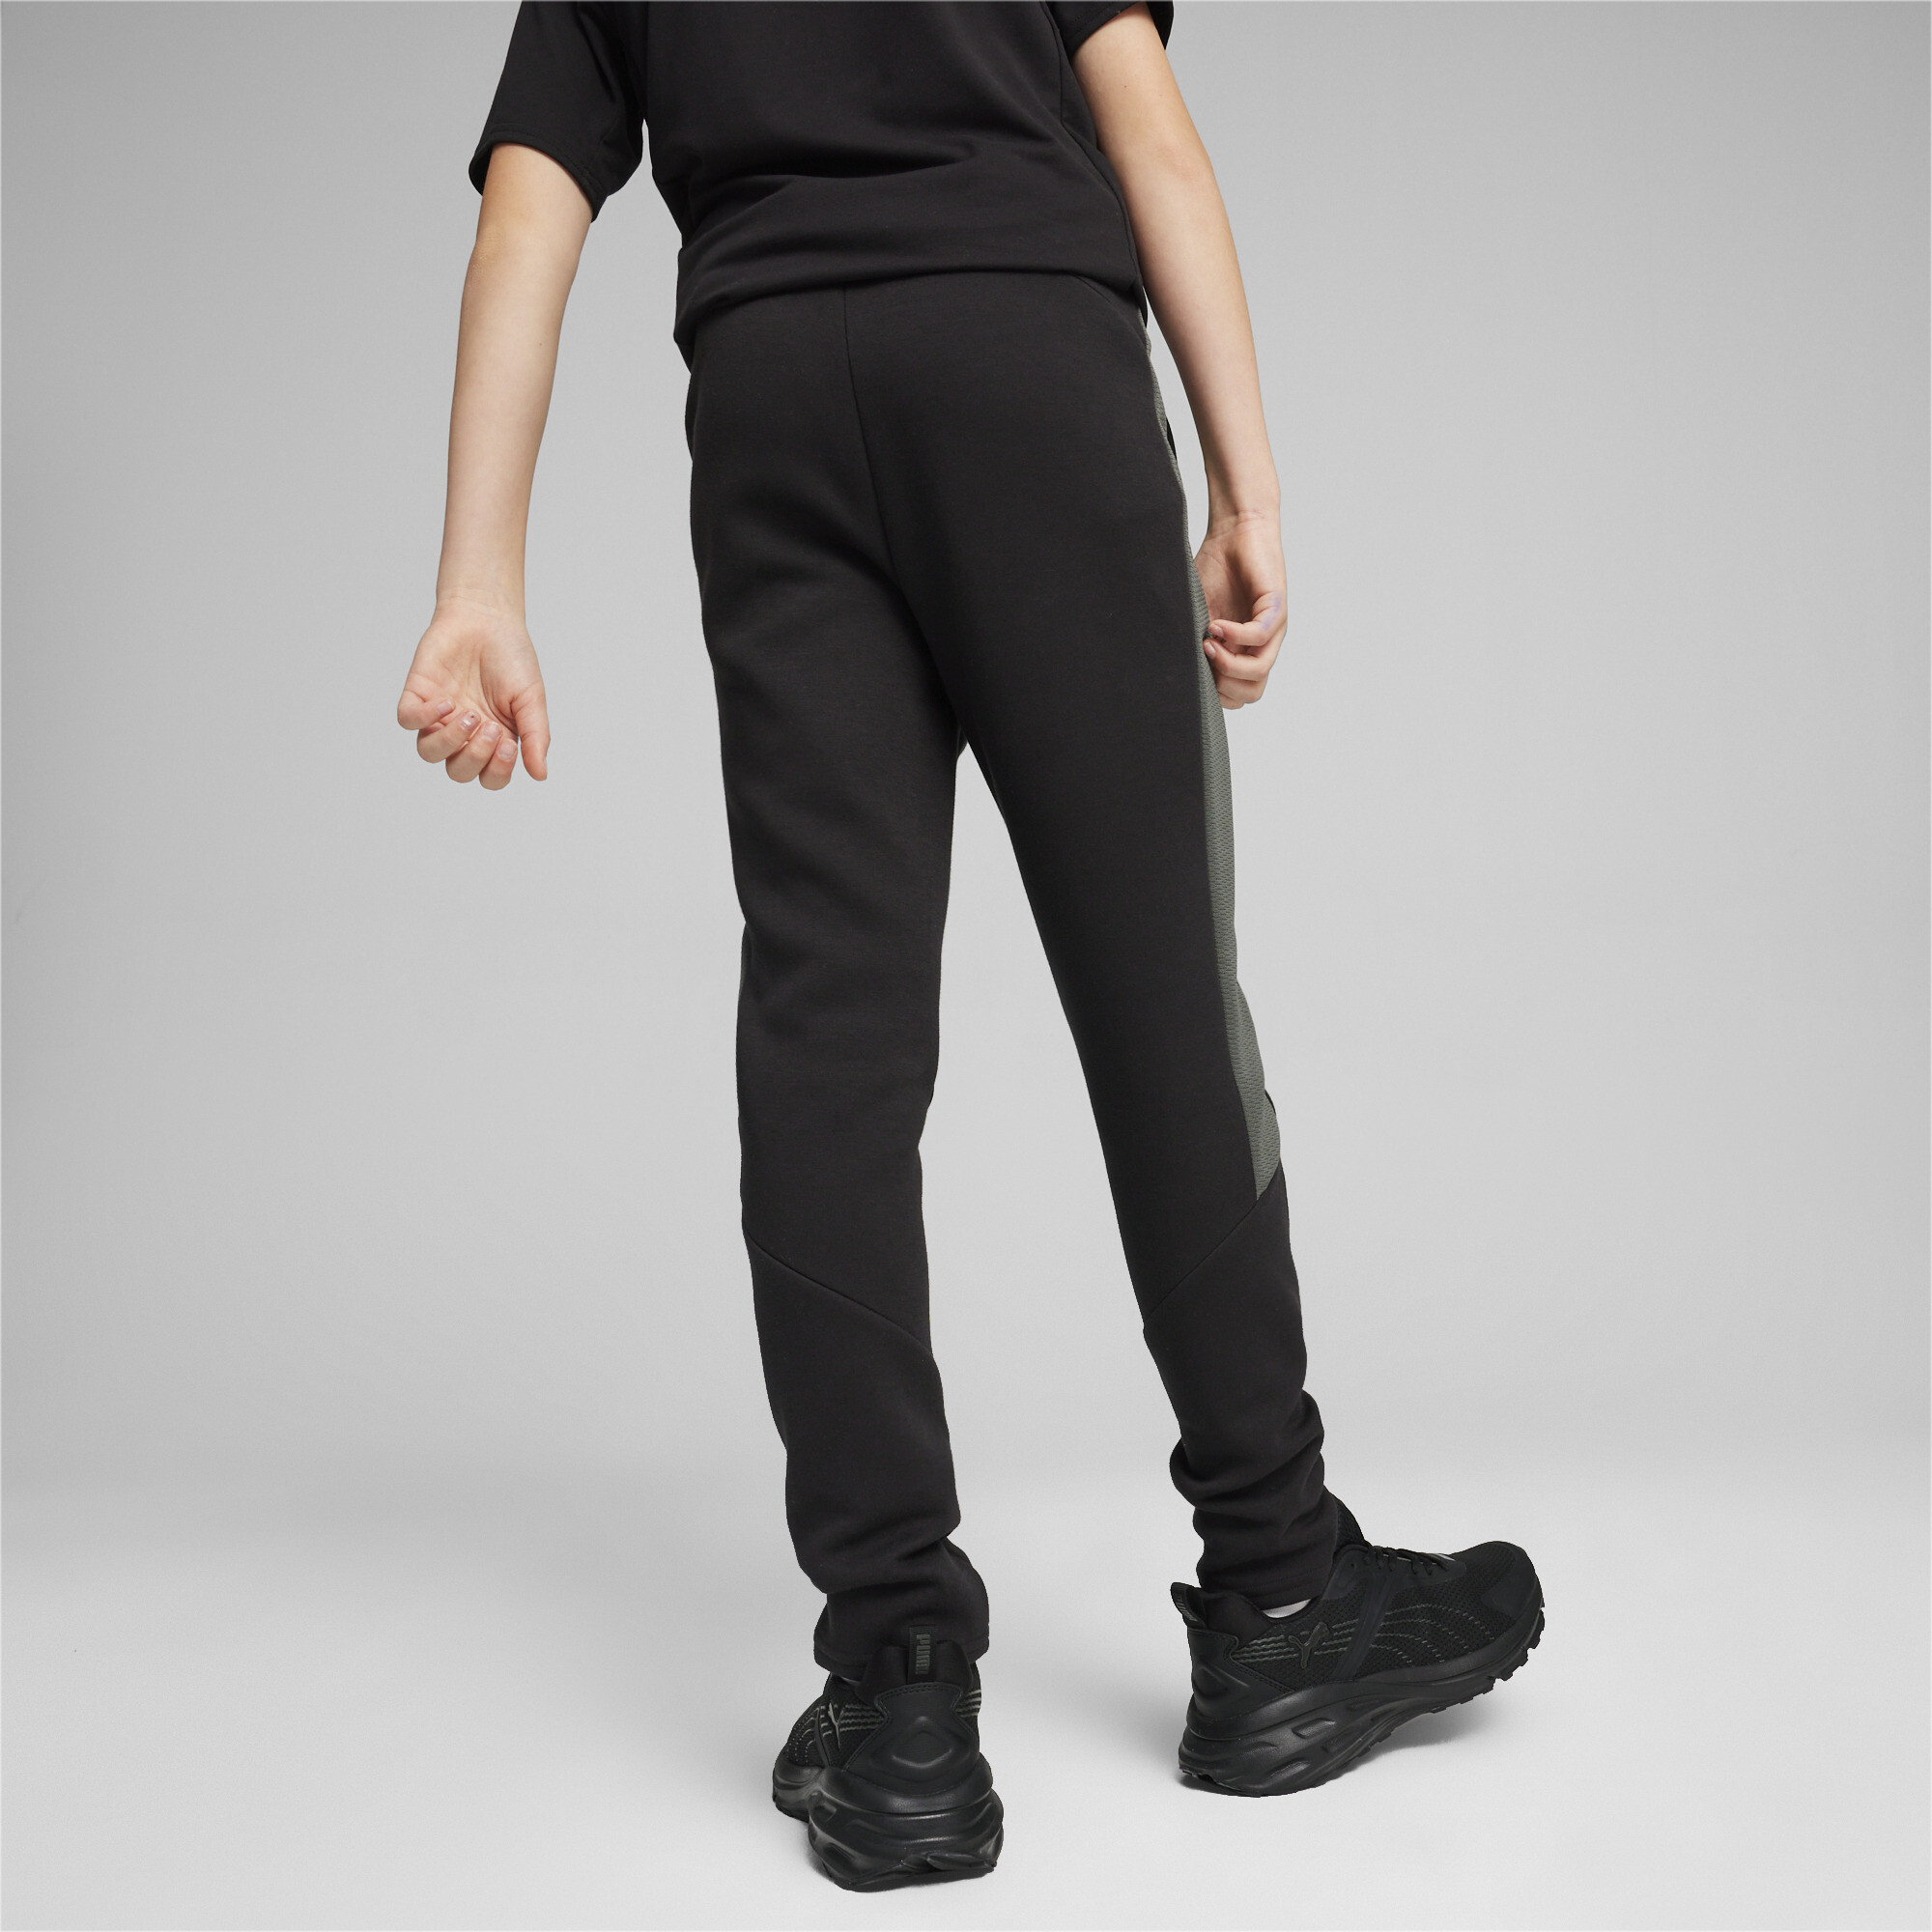 PUMA EVOSTRIPE Sweatpants In Black, Size 11-12 Youth